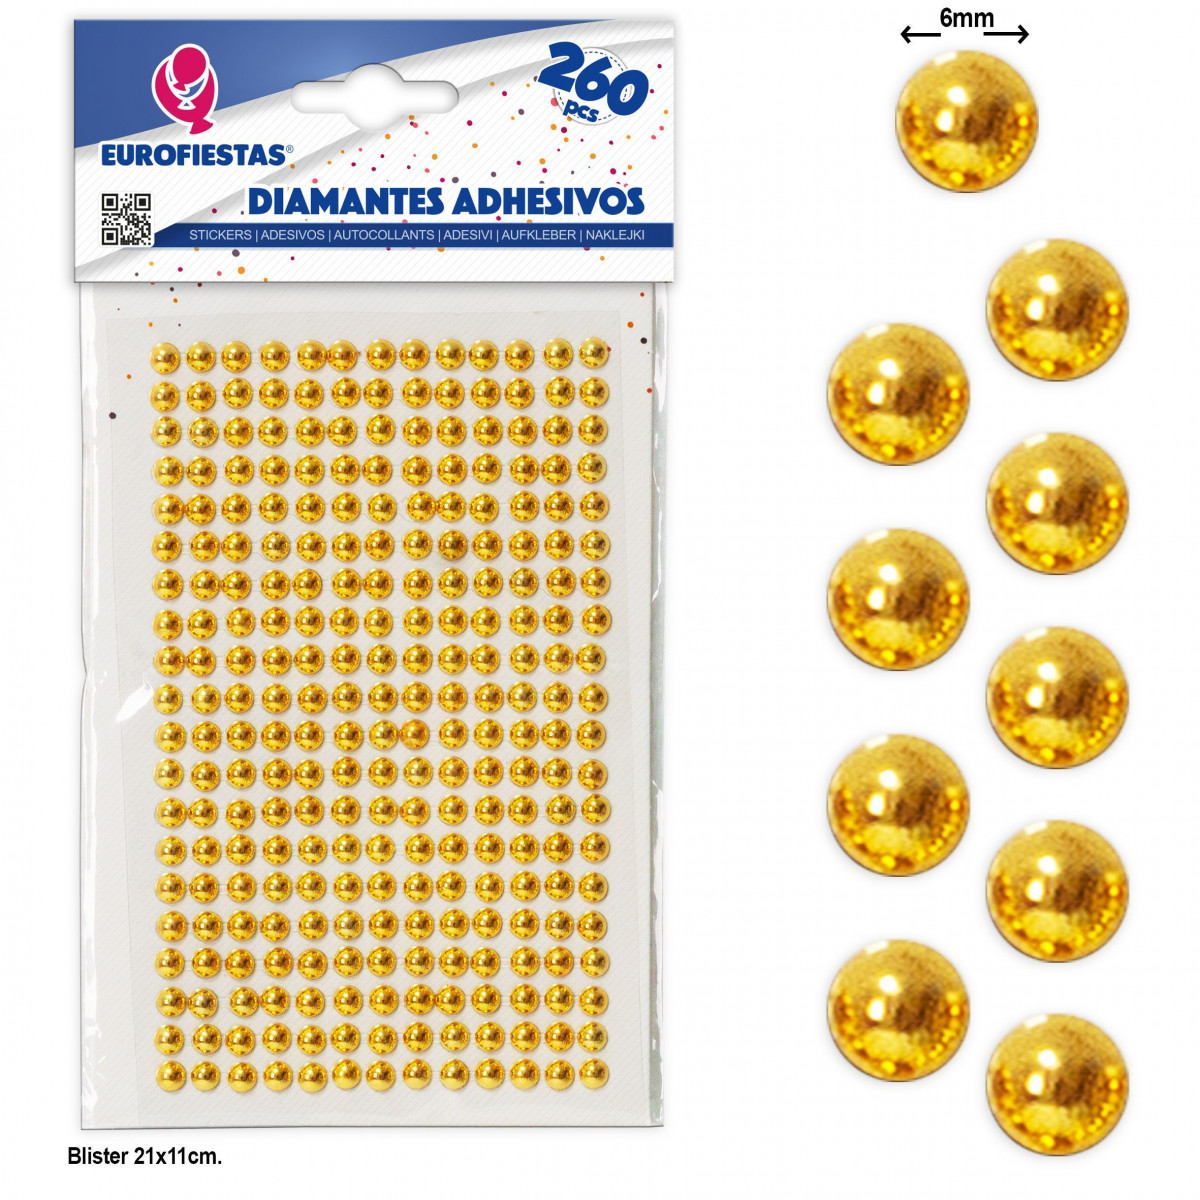 260 diamantes adhesivos med oro chapado